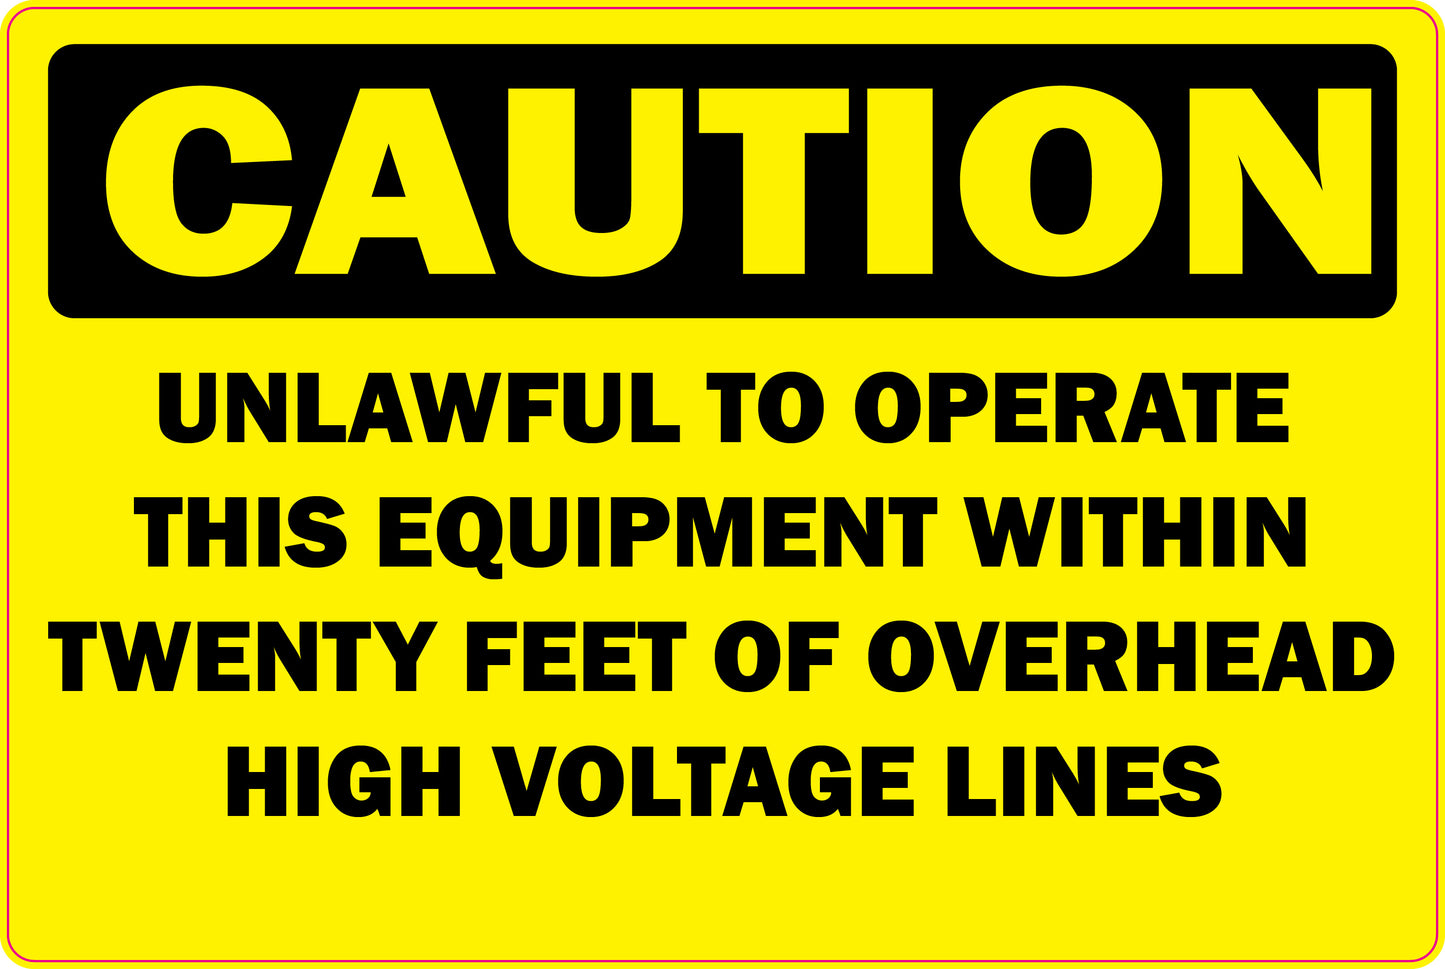 Caution Sticker -High Voltage Lines- 2 pack